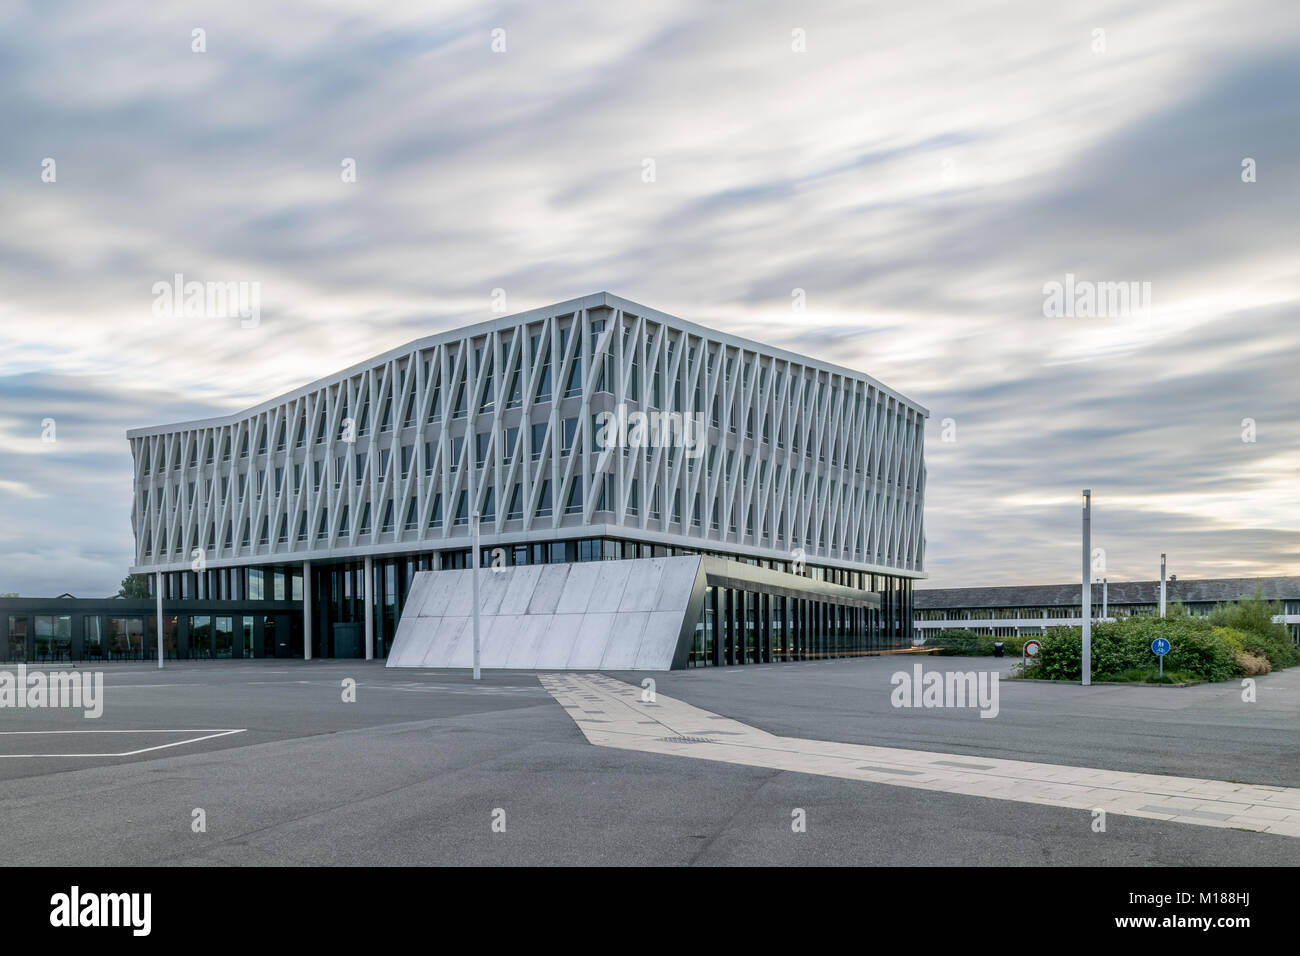 VIBORG, DENMARK - AUGUST 18, 2016: City hall of Viborg, Denmark. Designed by Henning Larsen international architecture firm Stock Photo